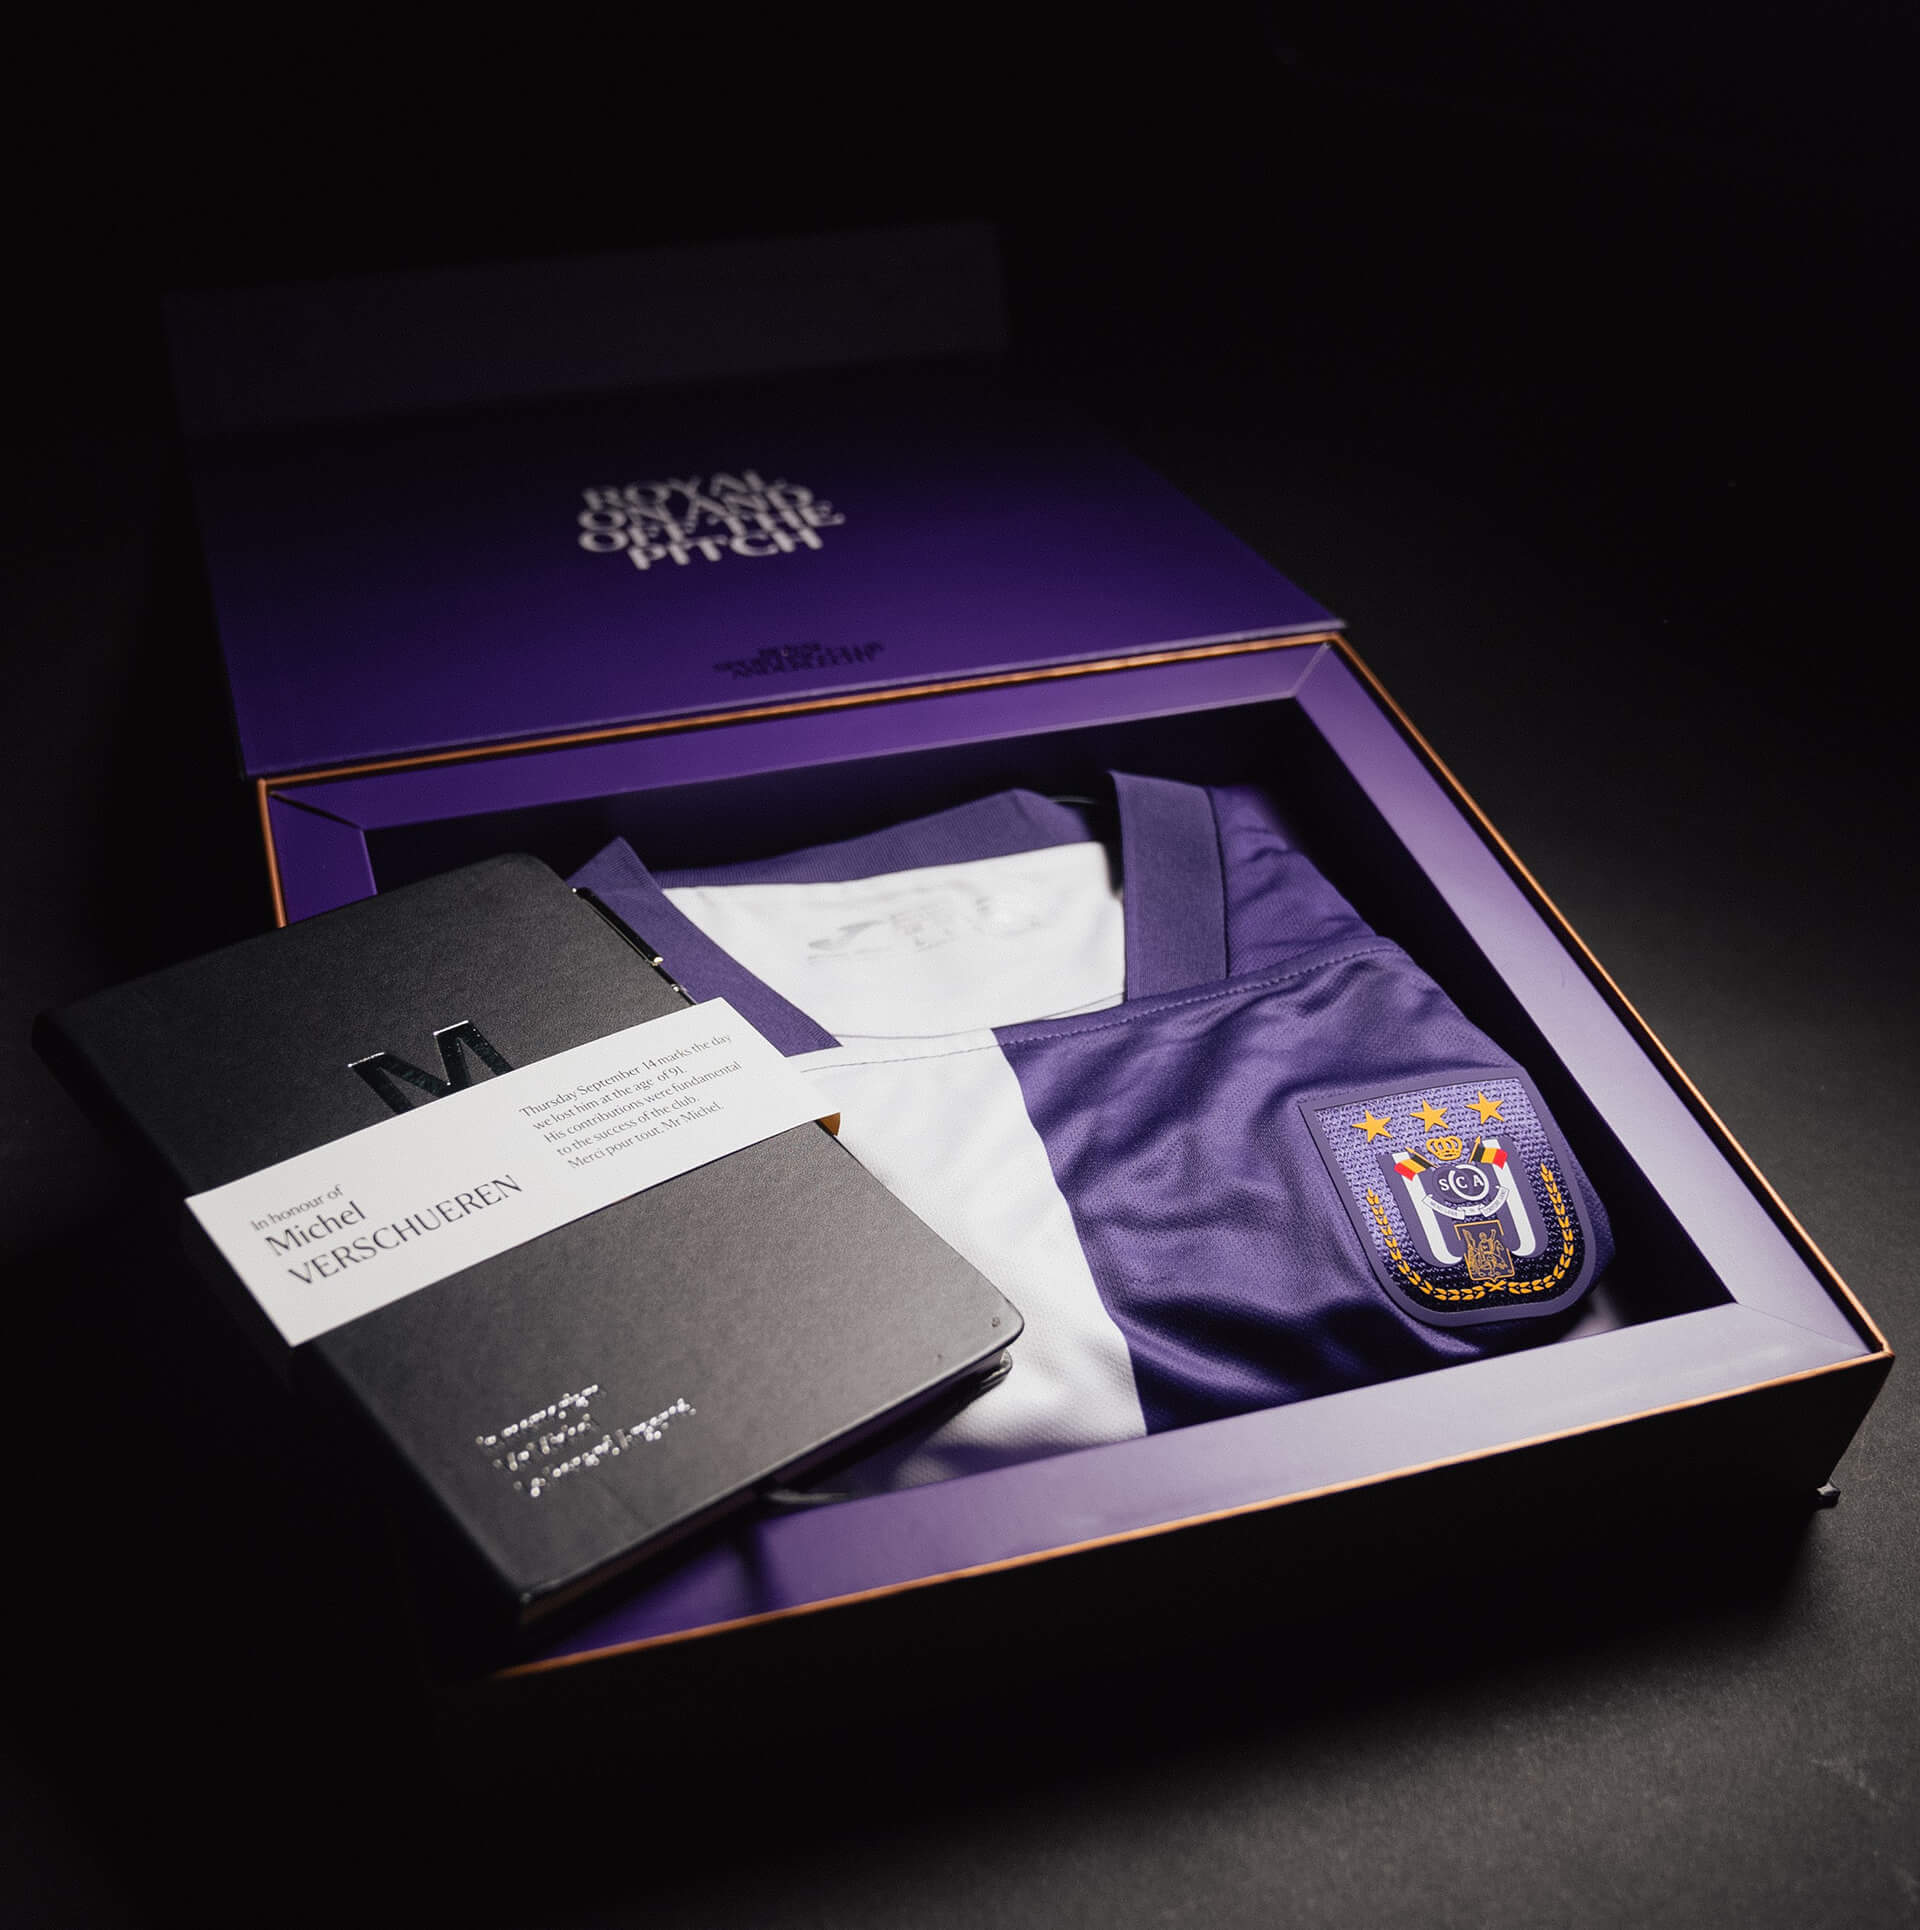 RSCA Match wear - The official Fanshop of RSC Anderlecht